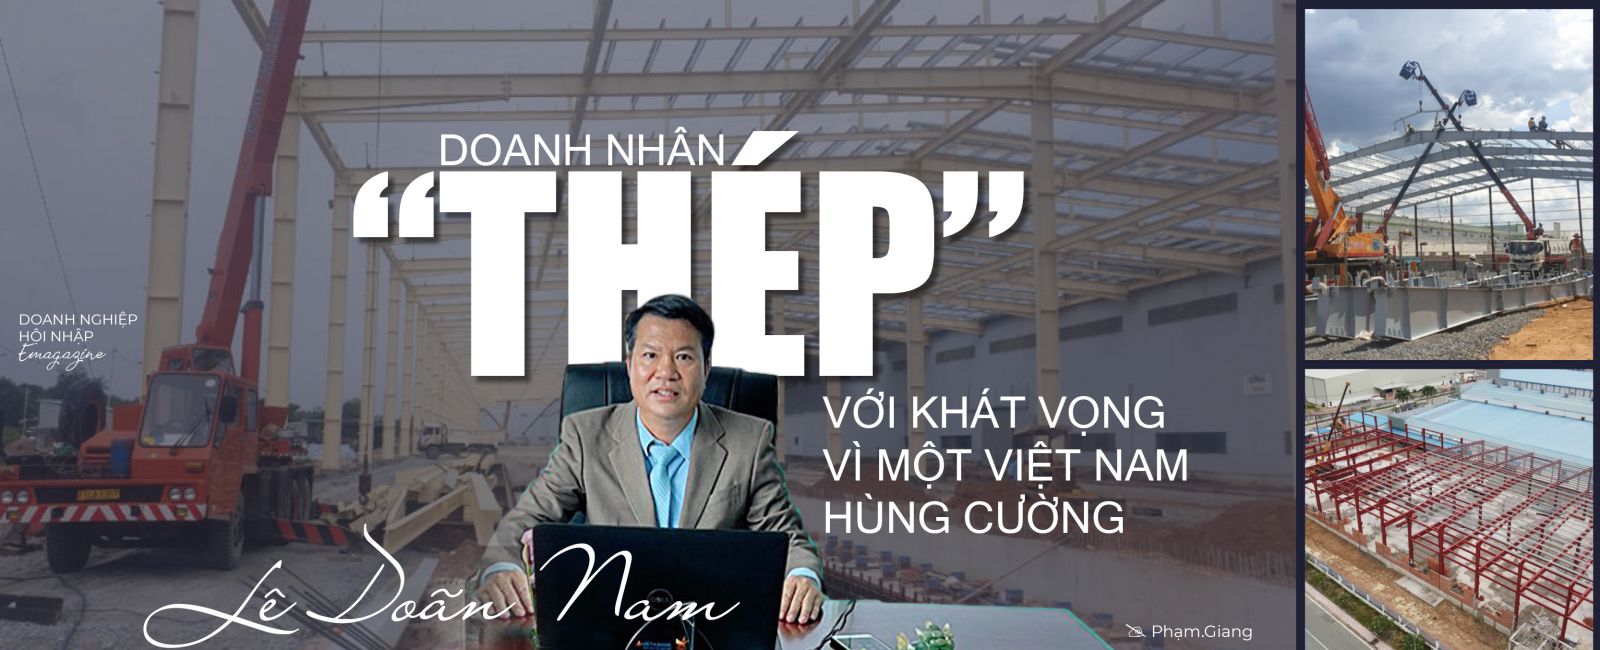 Doanh nhân “Thép” Lê Doãn Nam: Với khát vọng vì một Việt Nam hùng cường